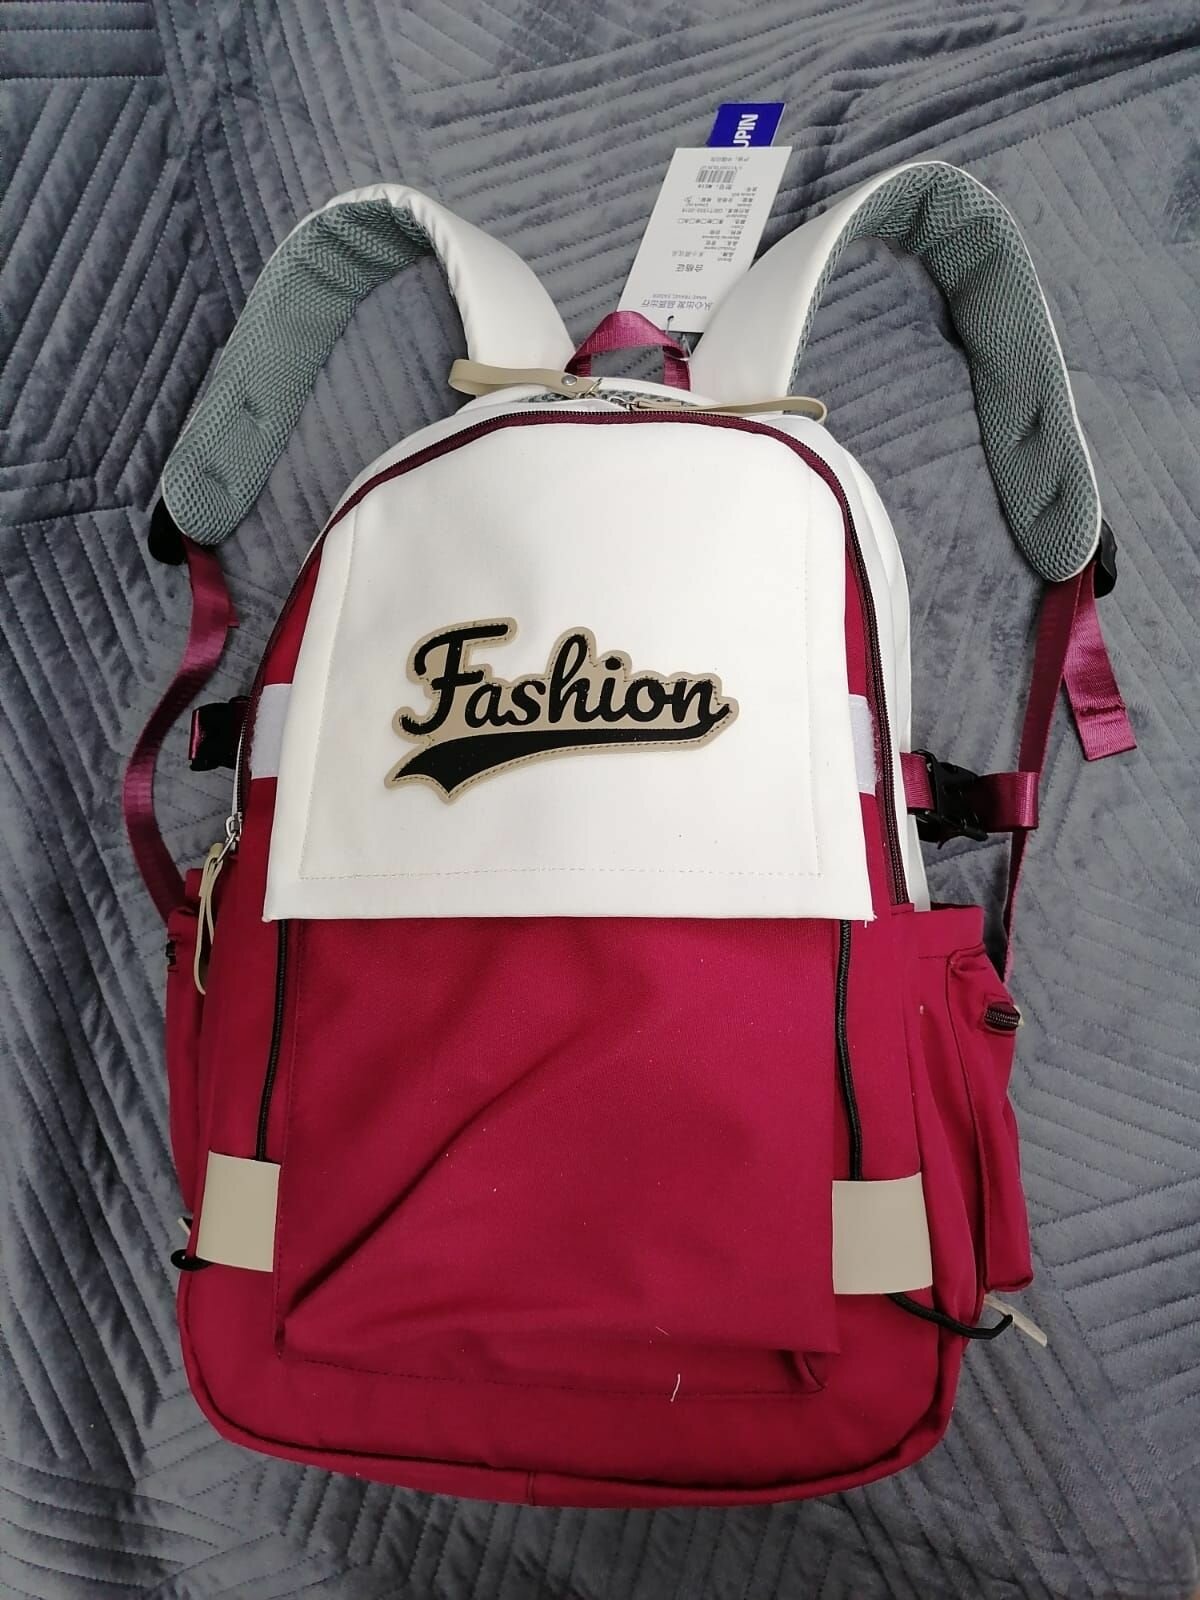 Качественный рюкзак для путешествий, городской, школьников, студентов повседневный, влагоотталкивающий материал